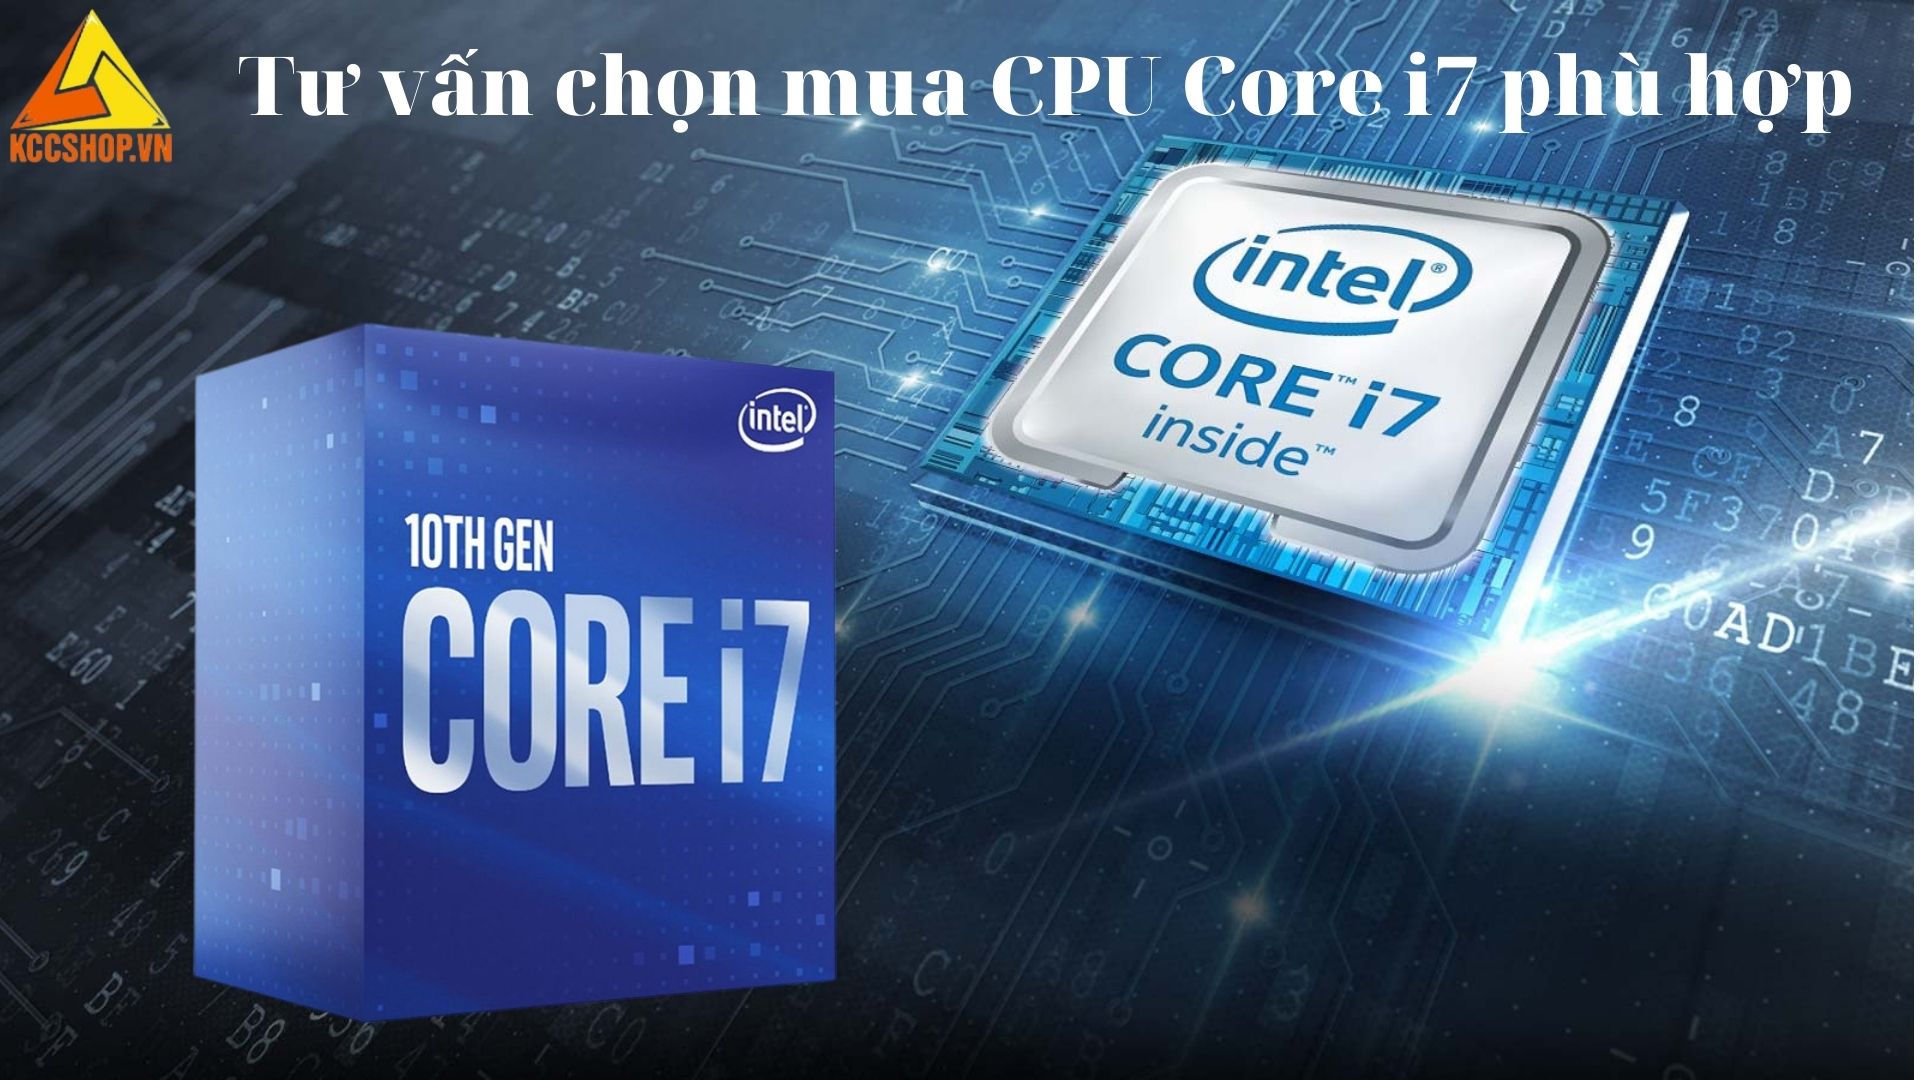 Tư vấn chọn mua CPU Core i7 phù hợp